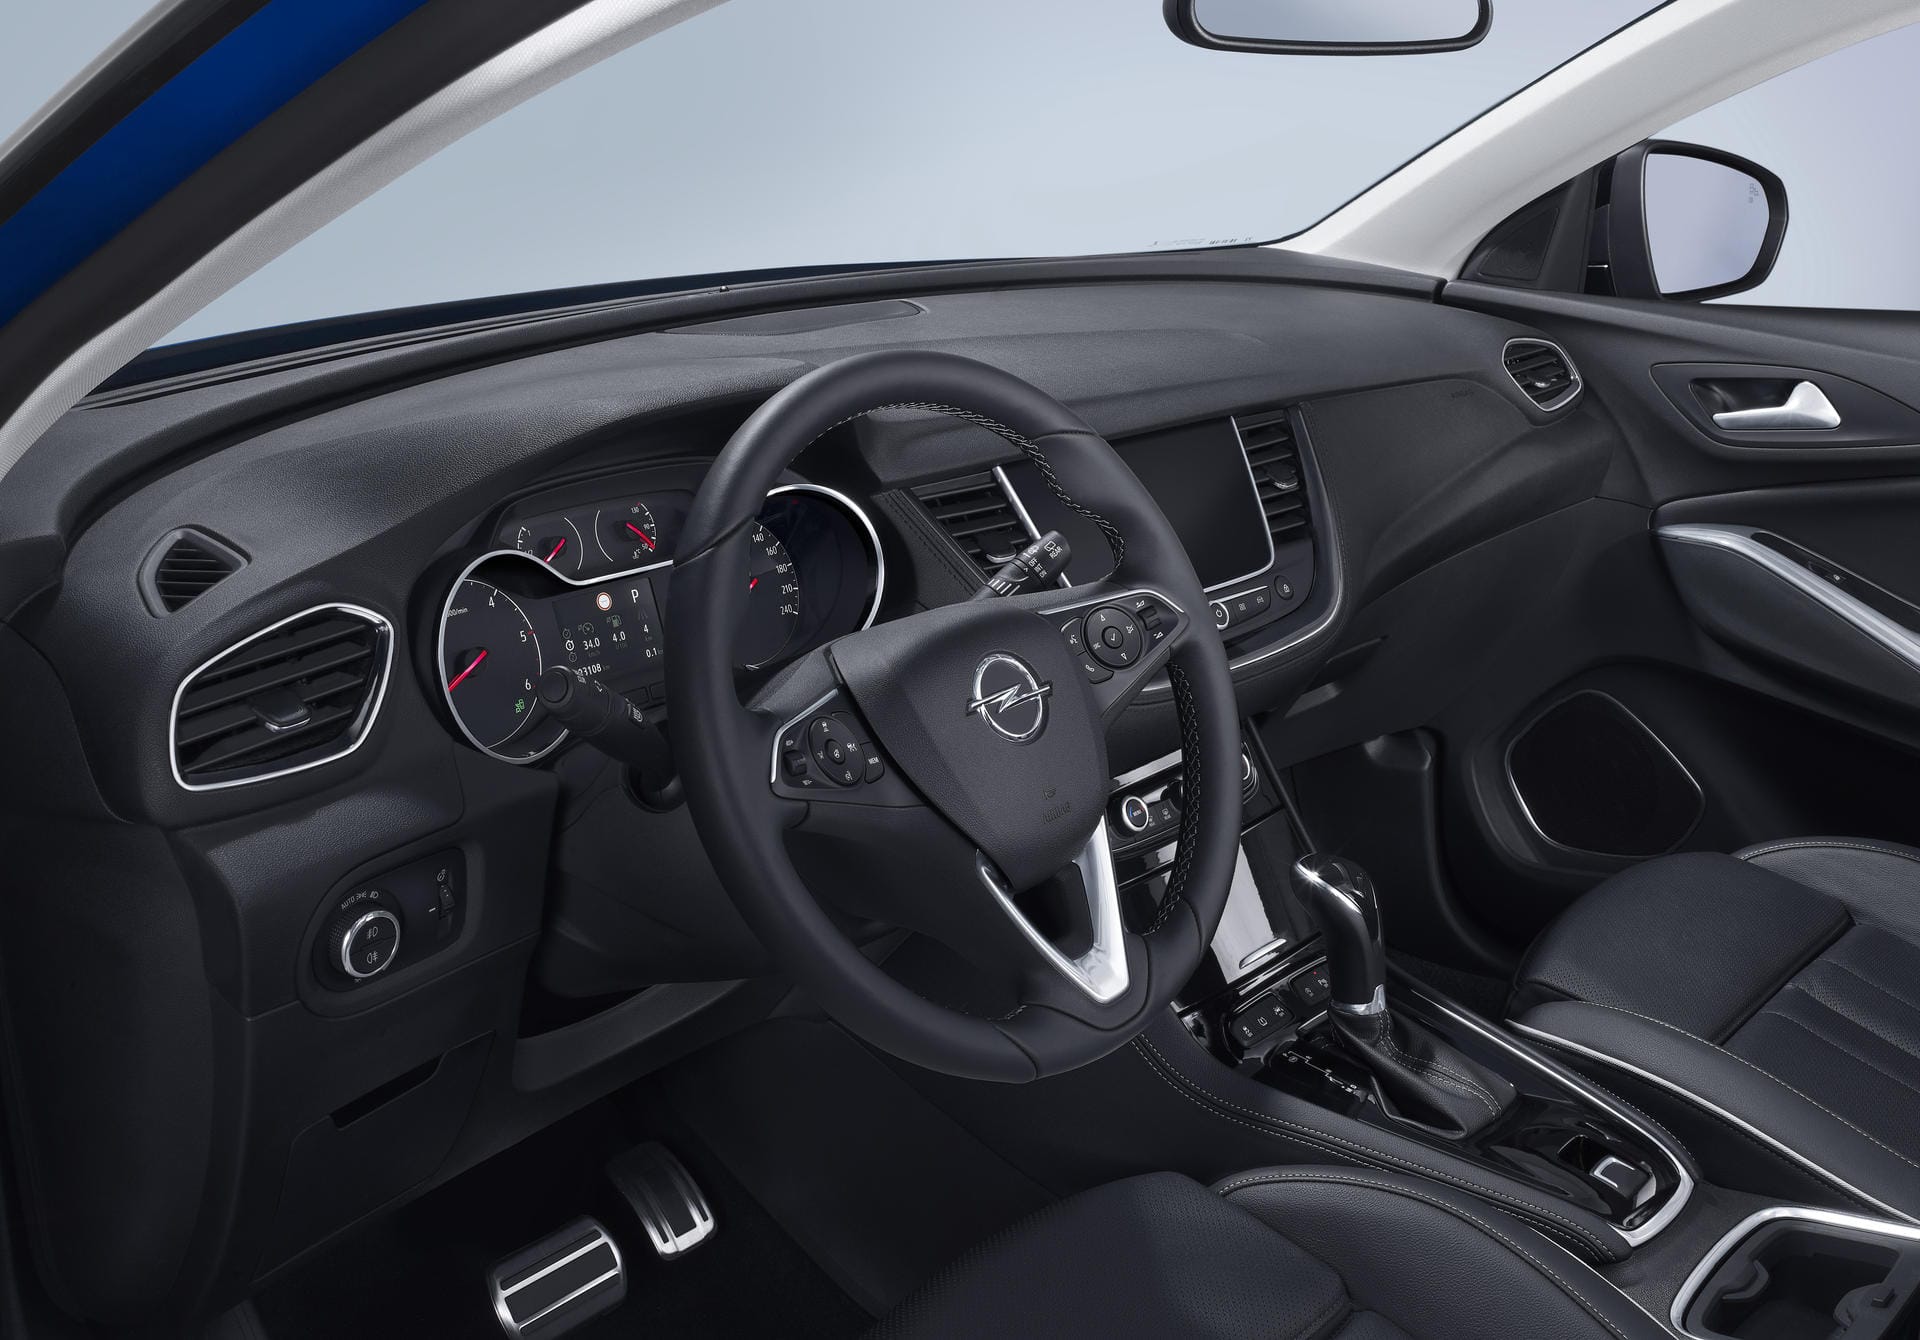 Opel Grandland X: Das SUV-Cockpit ähnelt dem von Mokka, Insignia und Co.